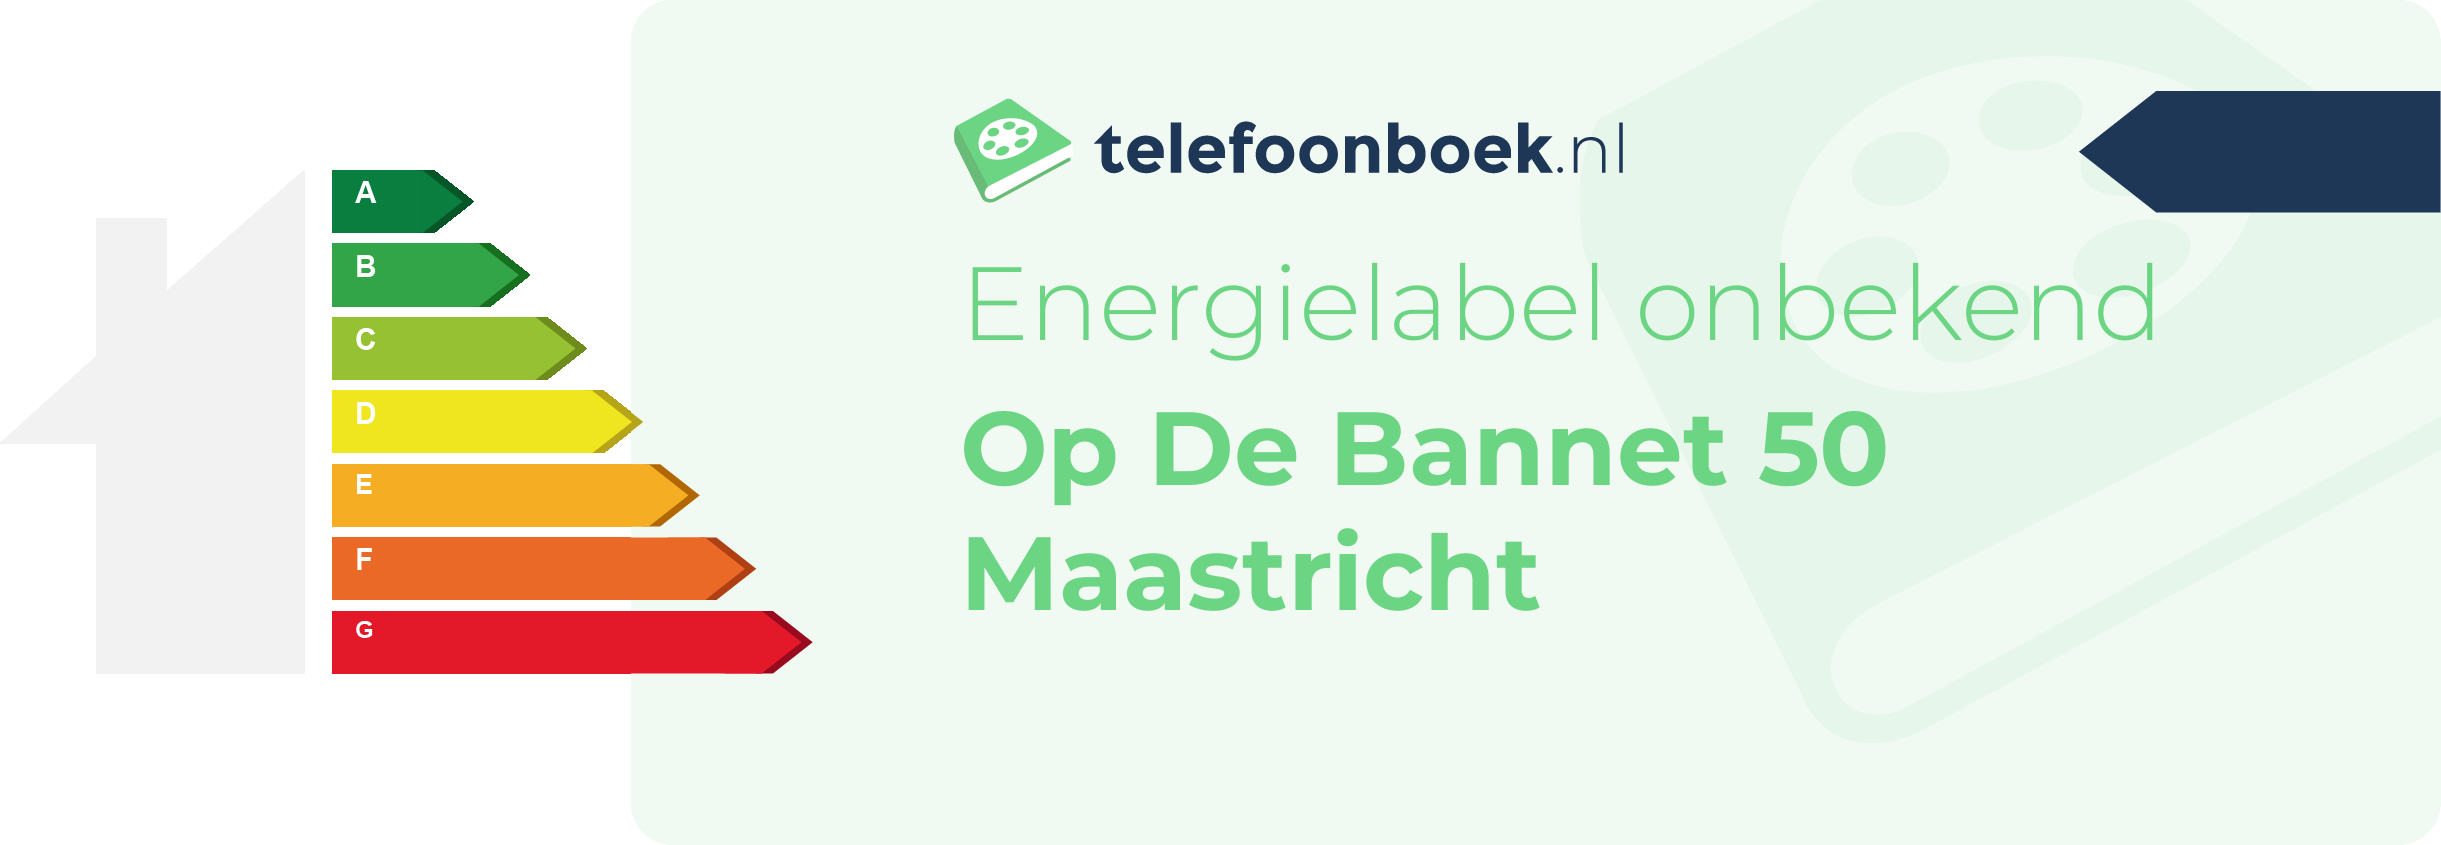 Energielabel Op De Bannet 50 Maastricht